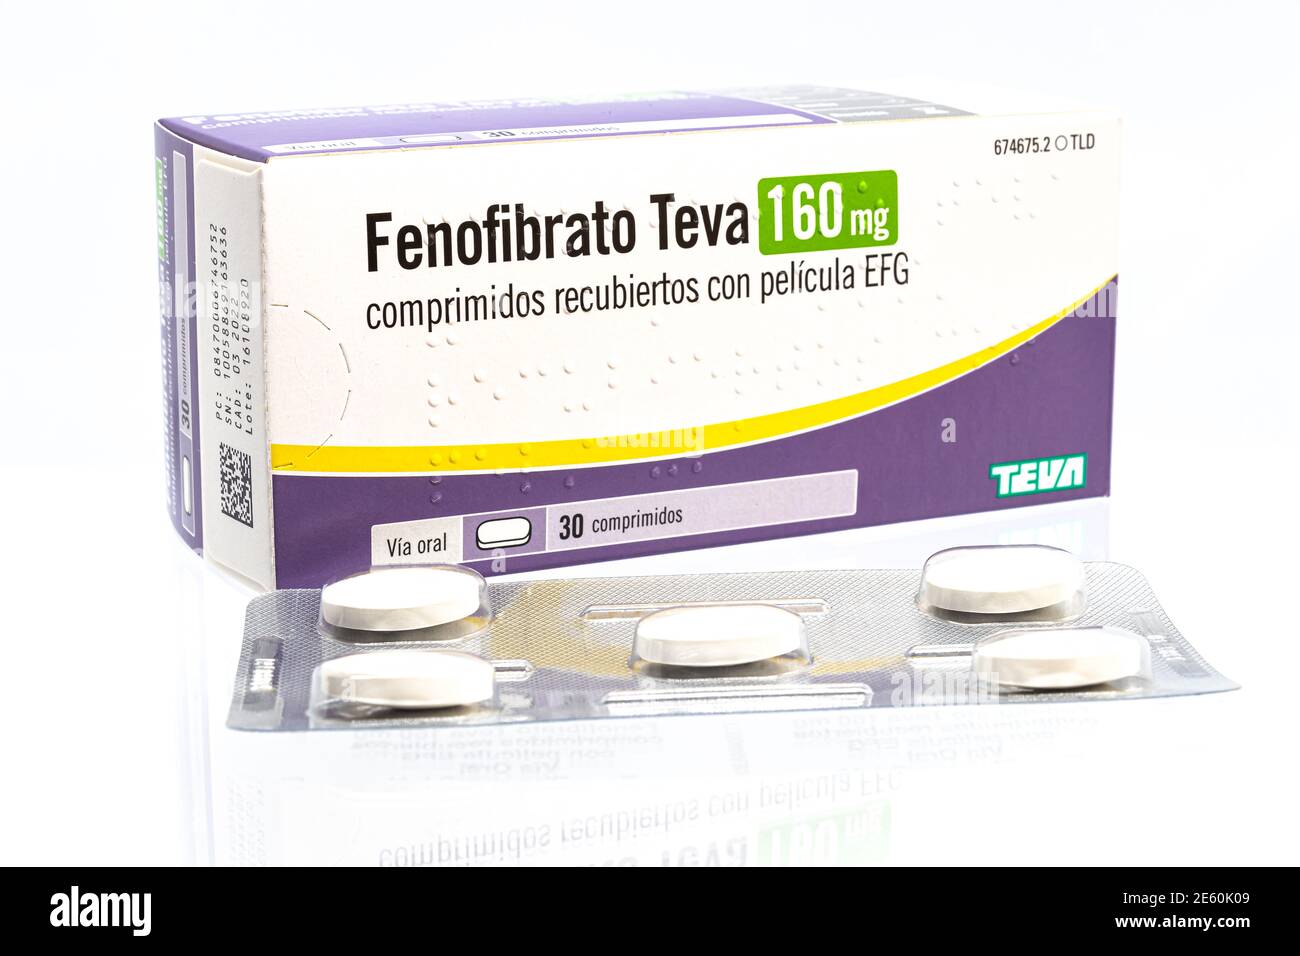 Huelva, Spagna - 25 gennaio 2021: Scatola spagnola del marchio di Fenofibrate Teva, è un farmaco della classe di fibrato usato per trattare livelli anormali di lipidi nel sangue Foto Stock